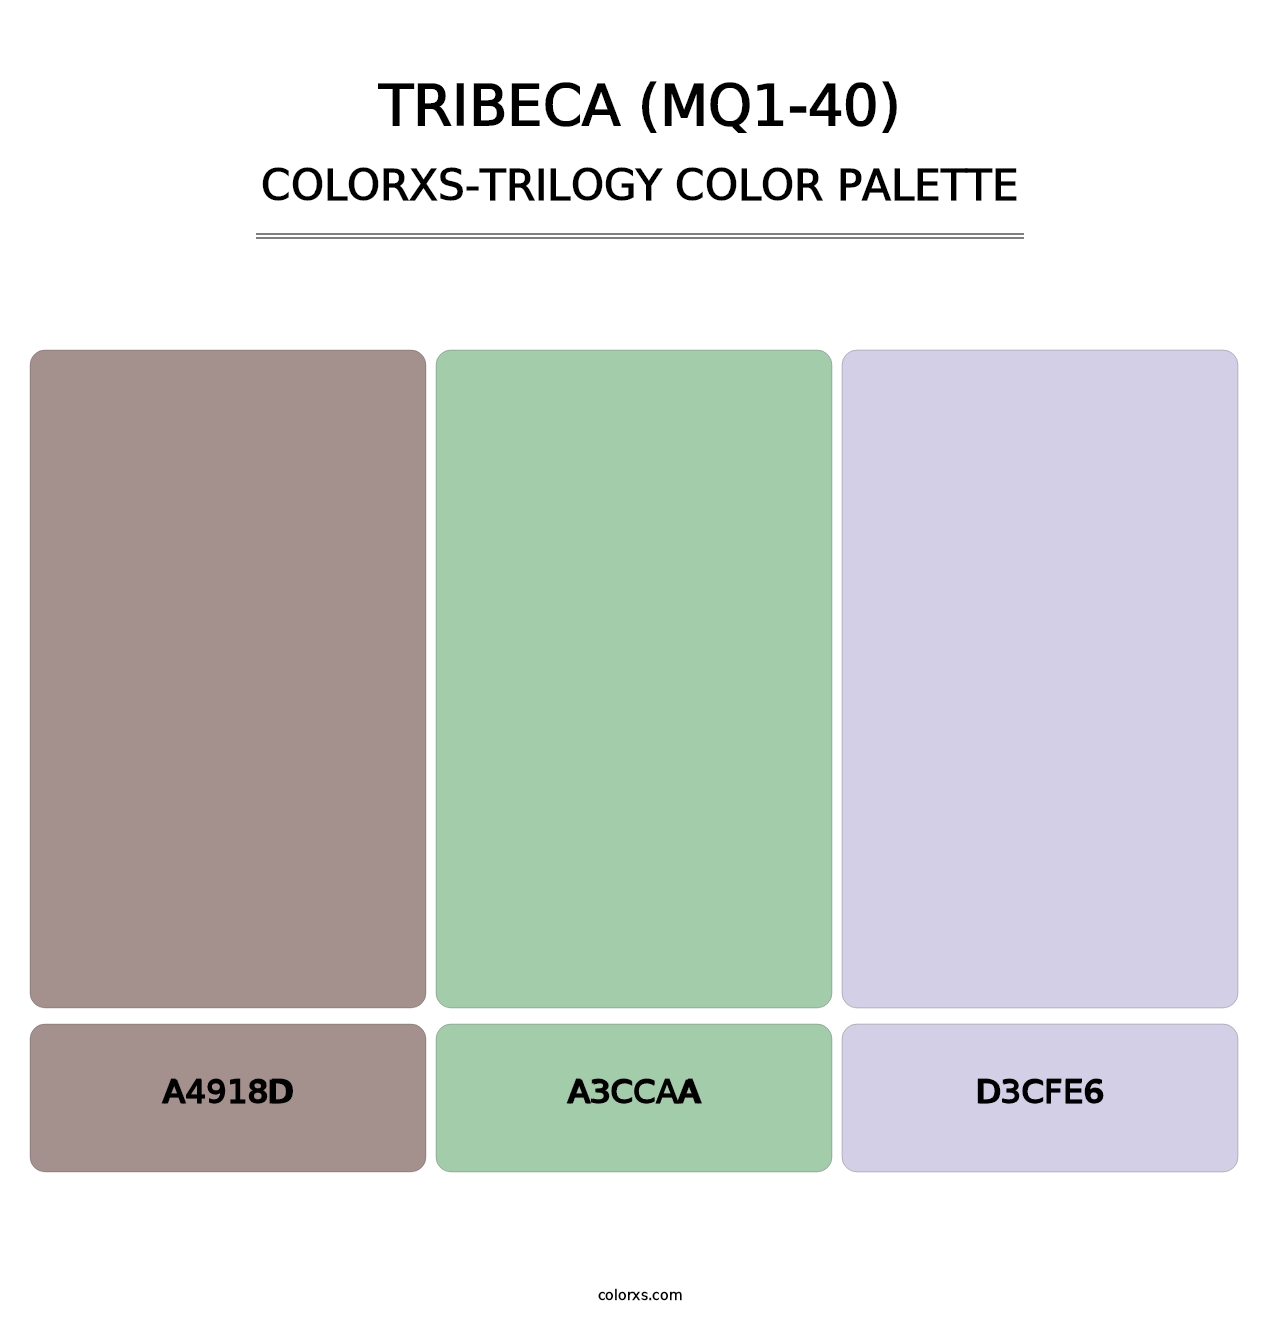 Tribeca (MQ1-40) - Colorxs Trilogy Palette